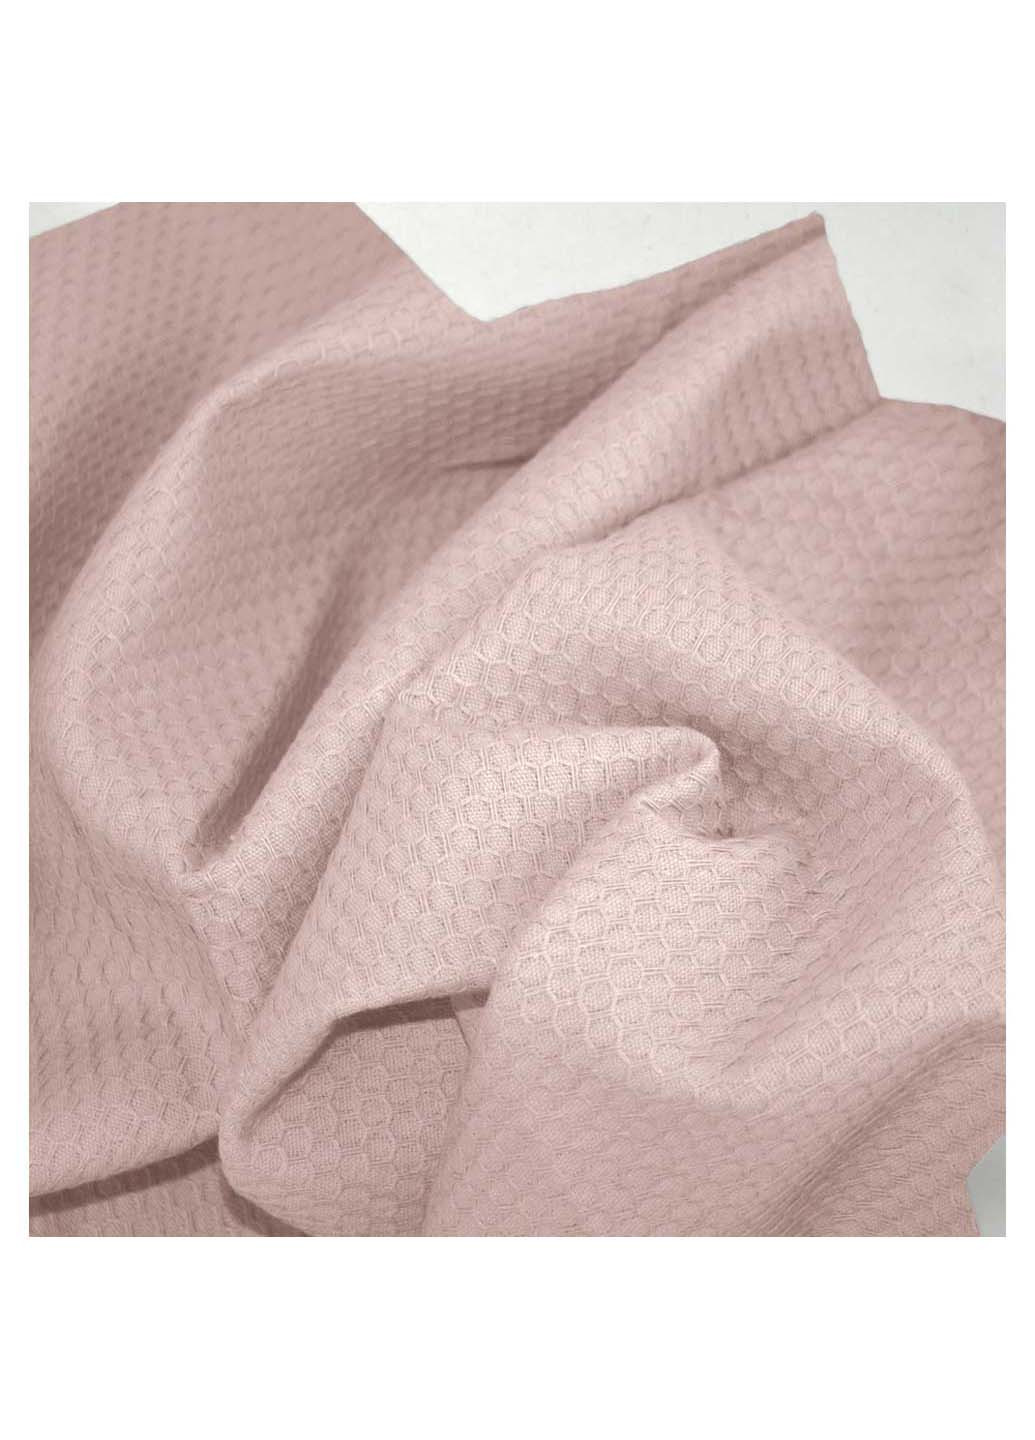 Cosas полотенце однотонный розовый производство -